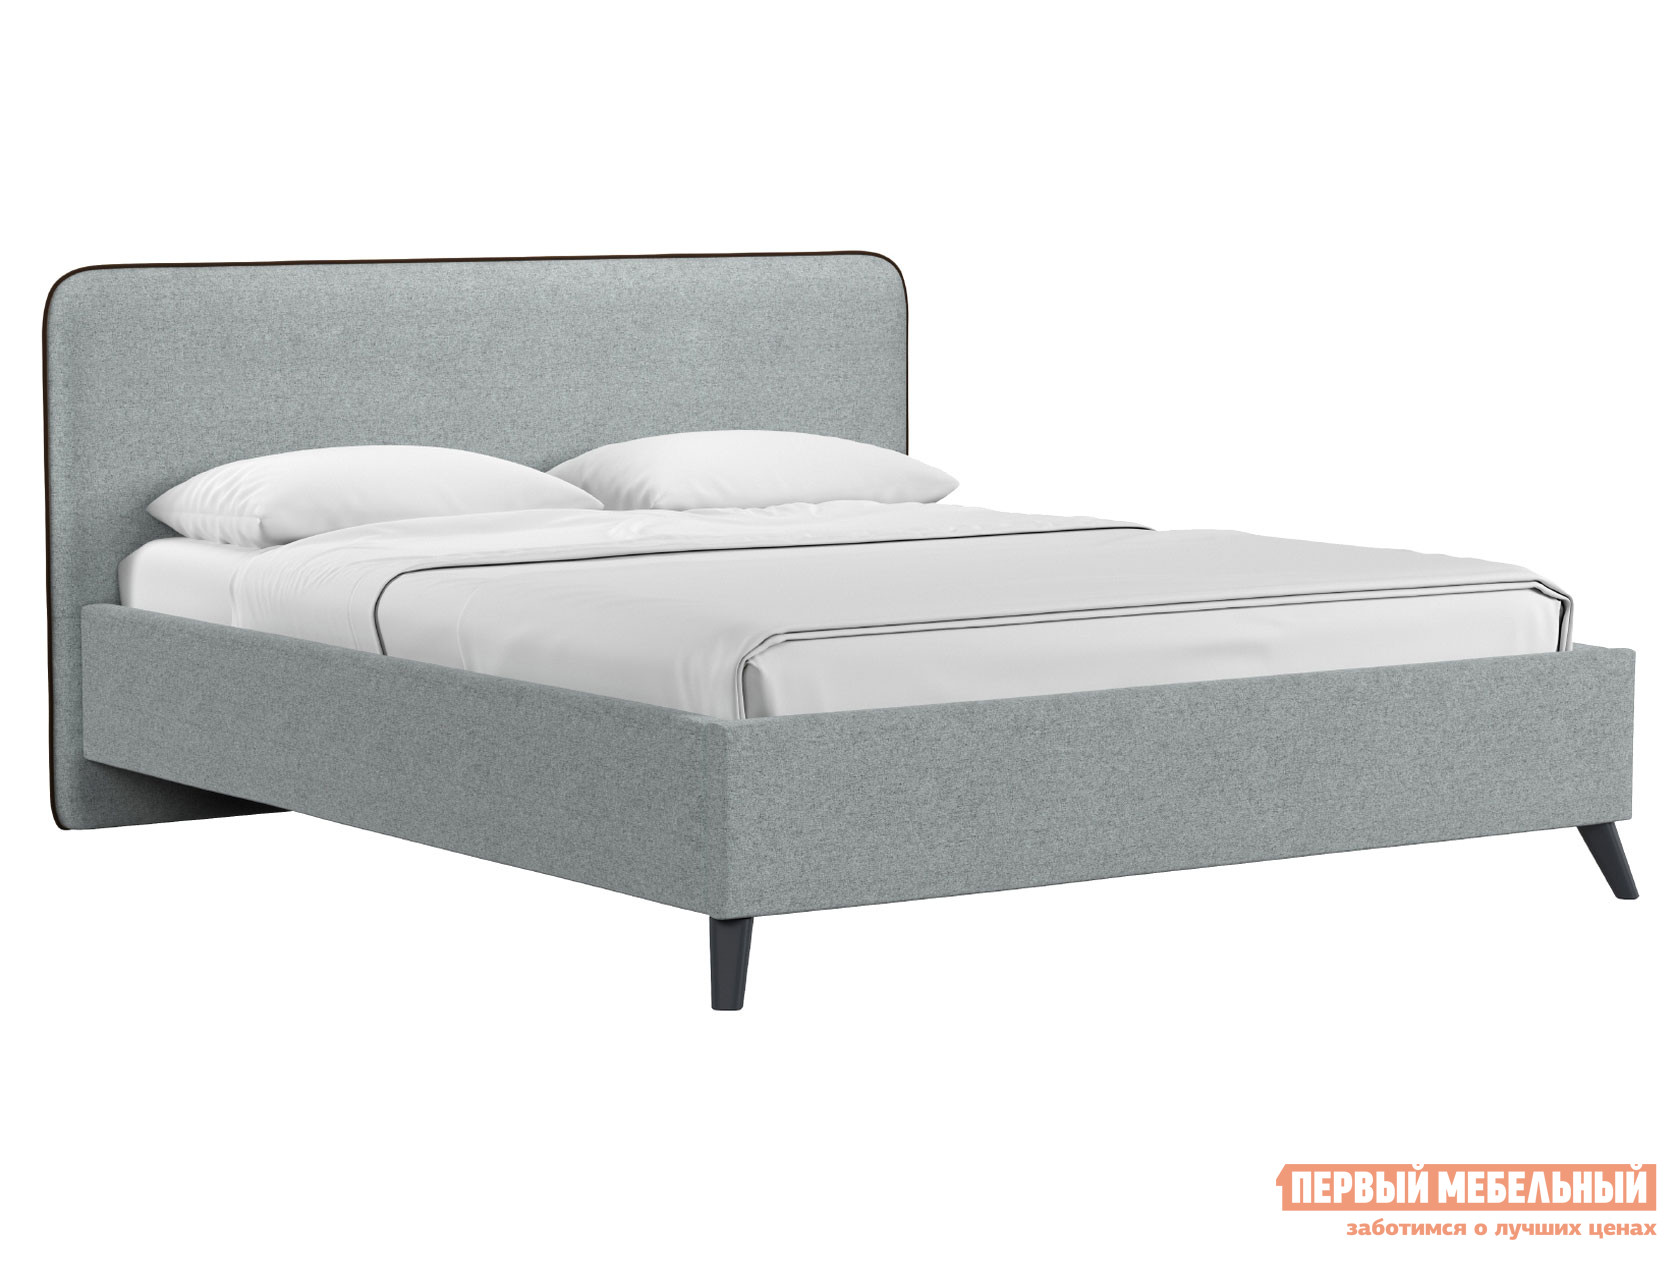 Двуспальная кровать  Миа ПМ Серый, жаккард, 140х200 см